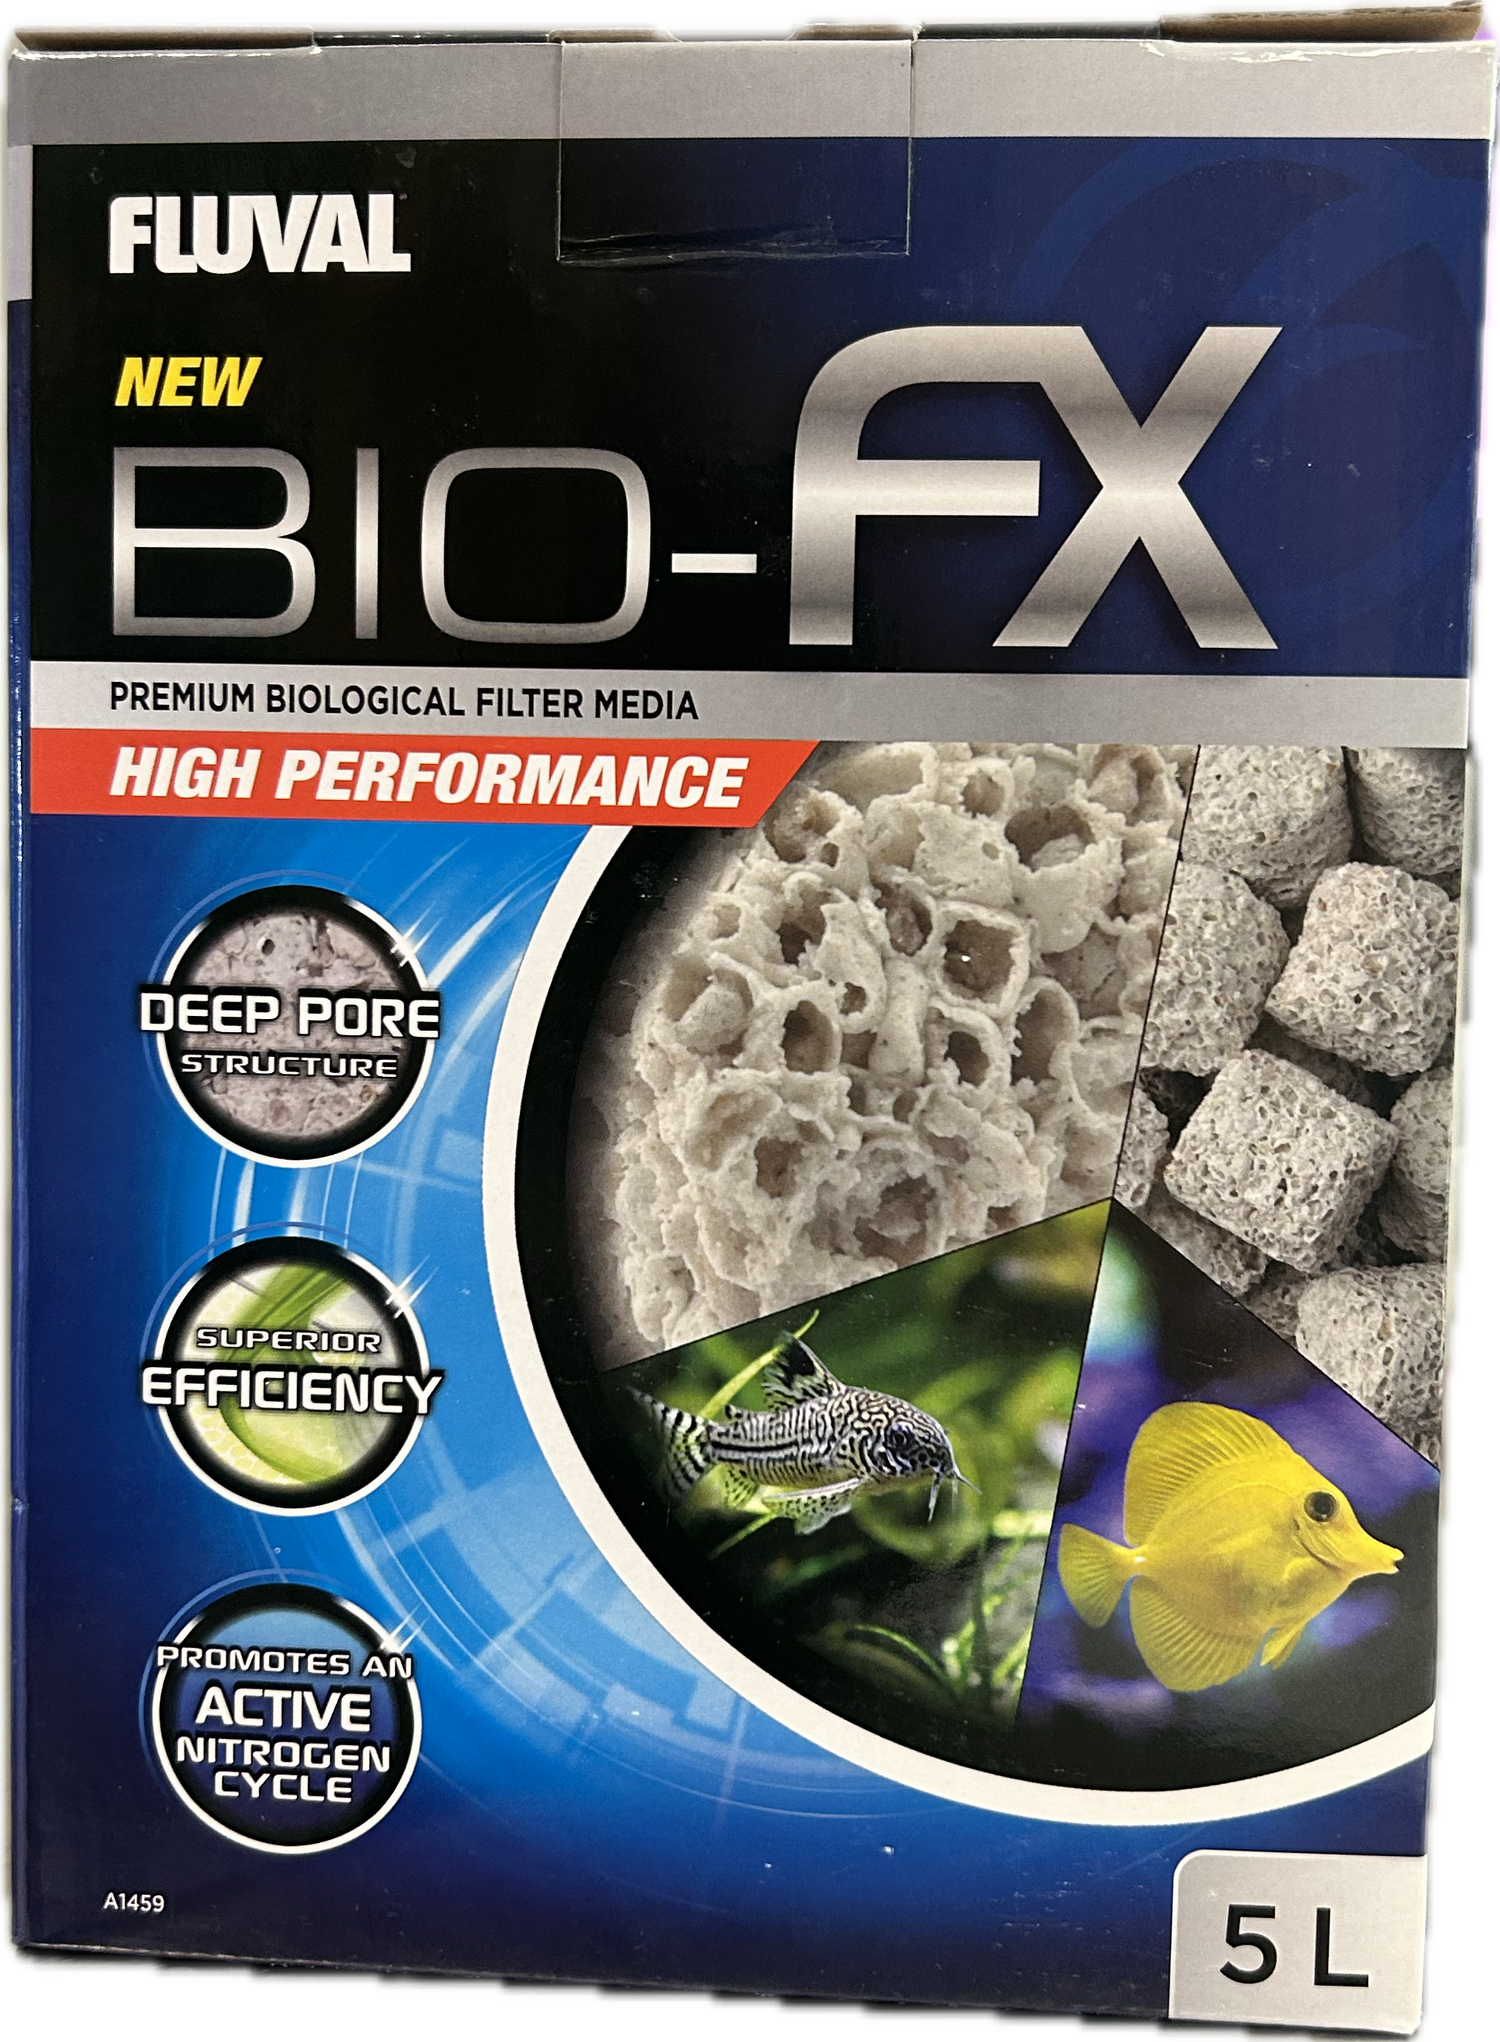 Fluval Bio-FX - 5 L